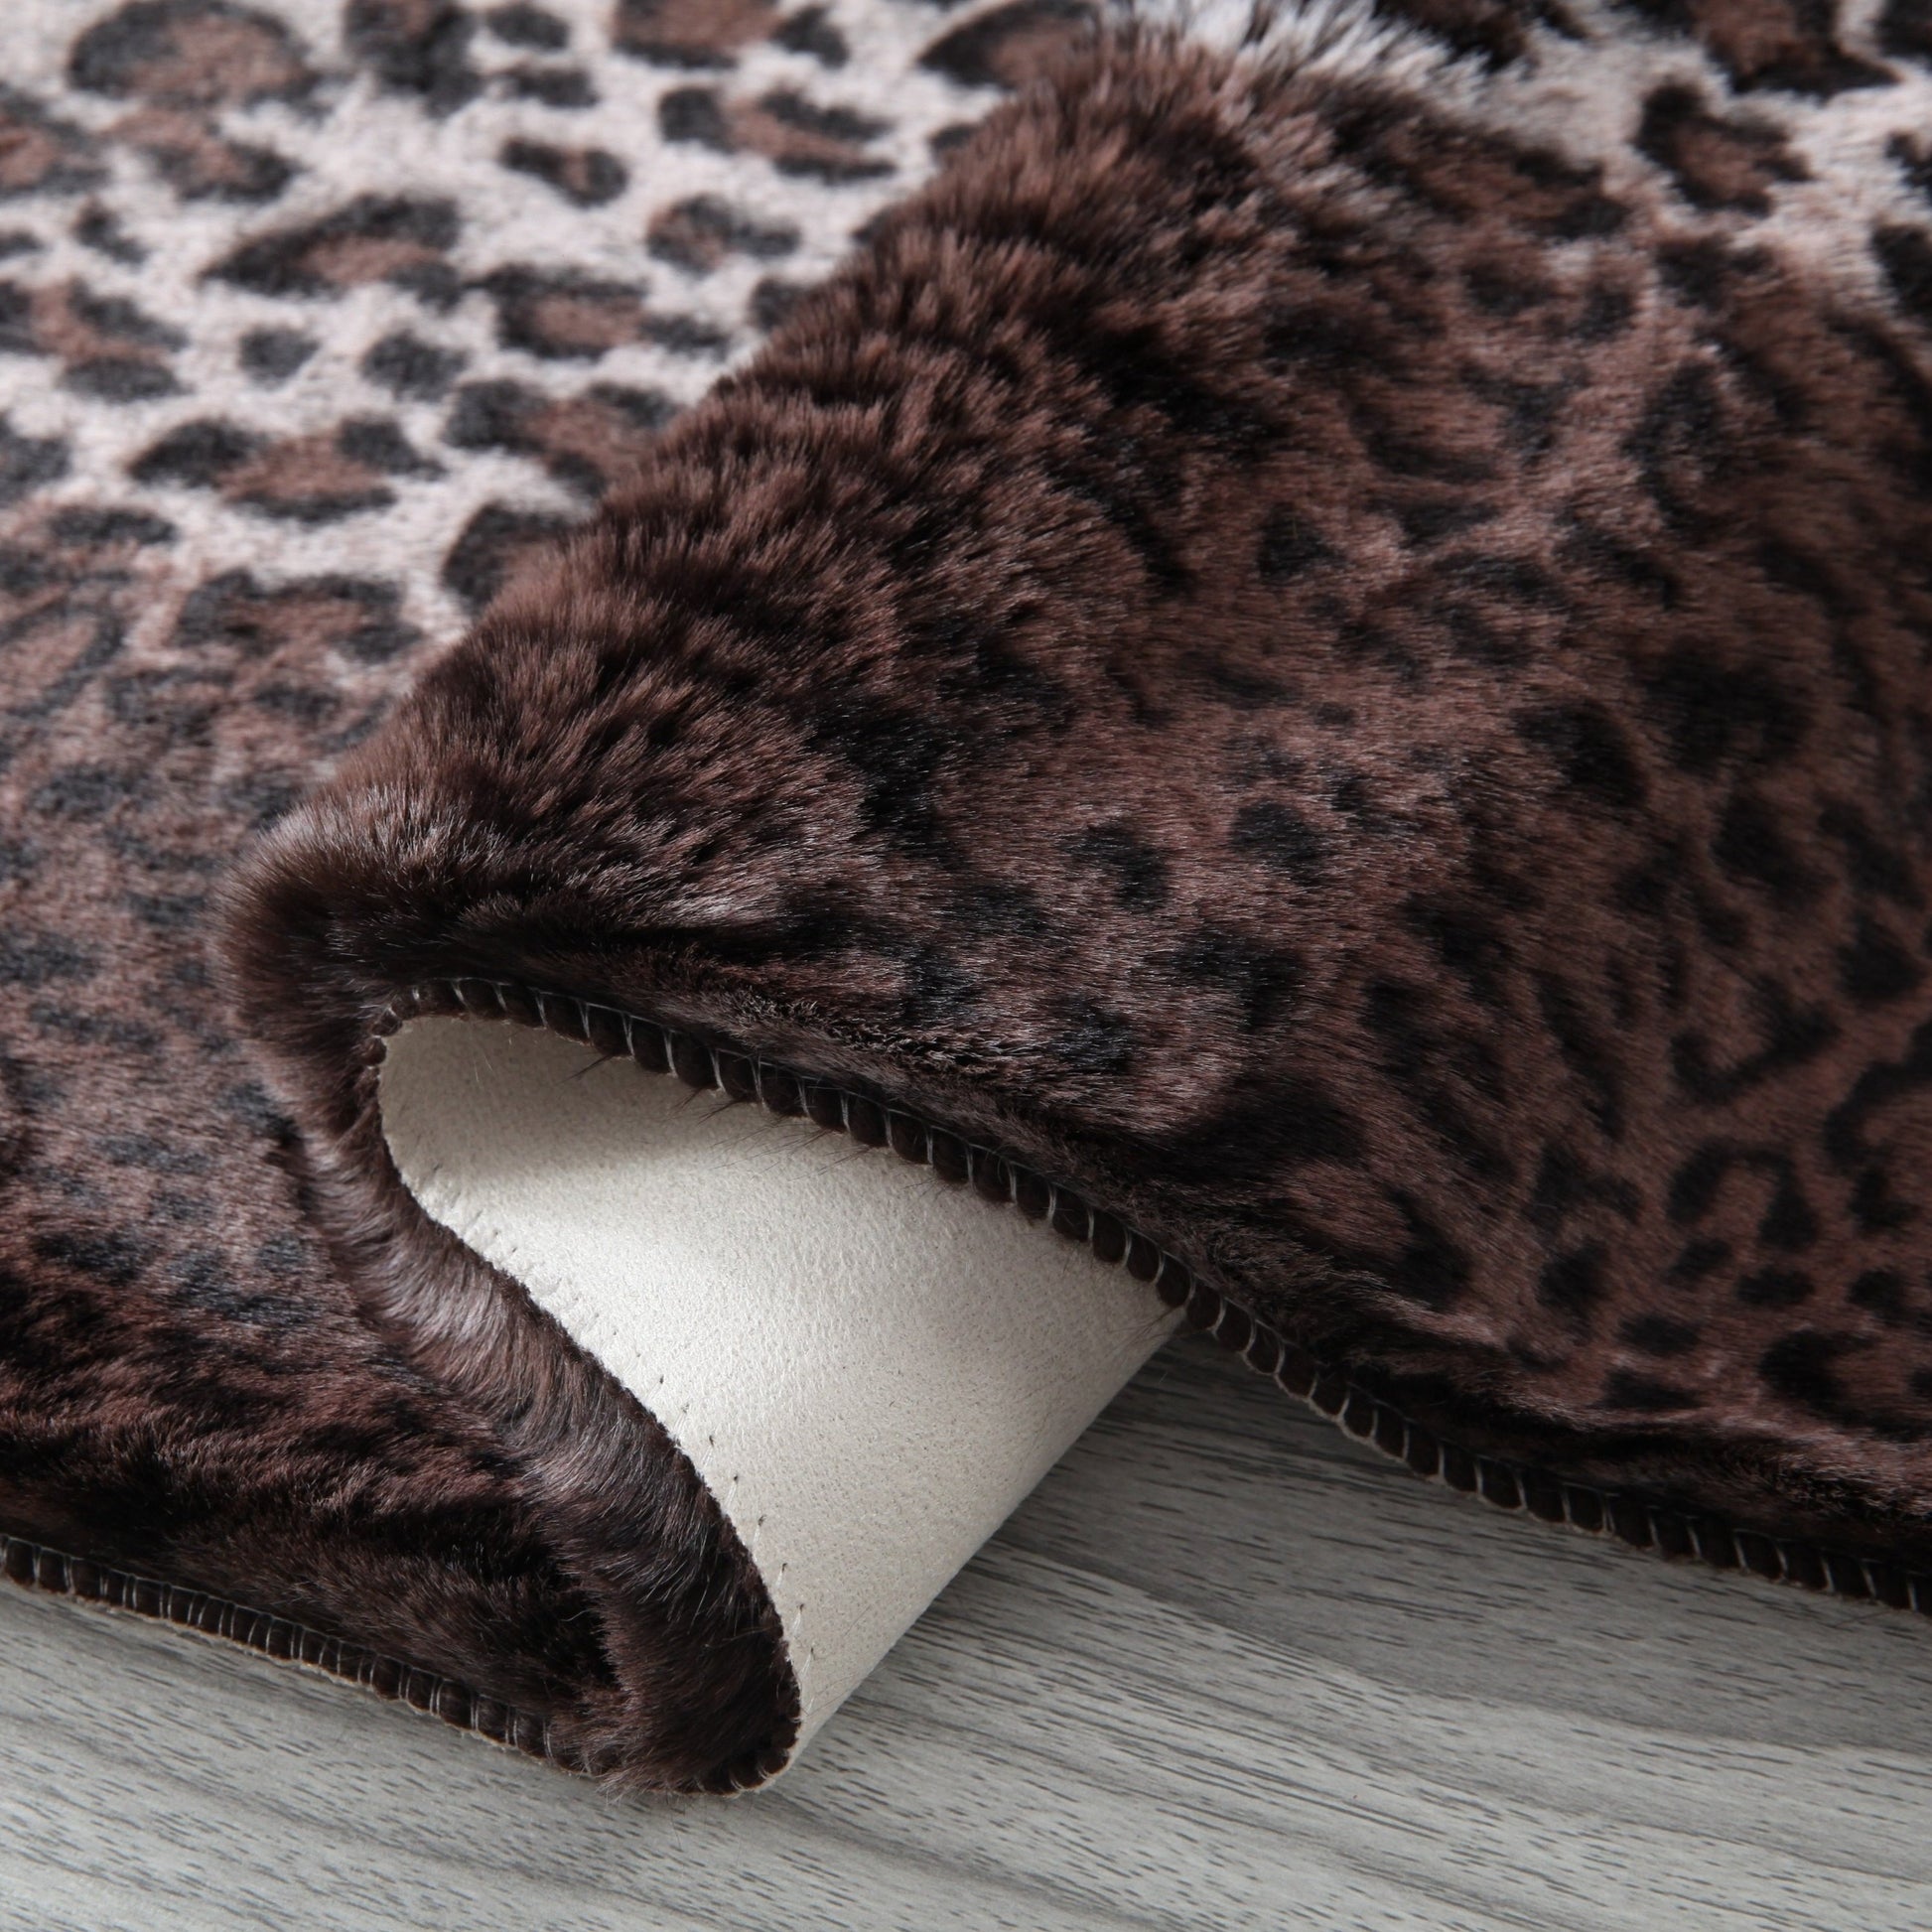 Leopard Cheetah Jaguar Feline Animal Print Soft Cozy Fuzzy Faux Fur Rug/ Carpet